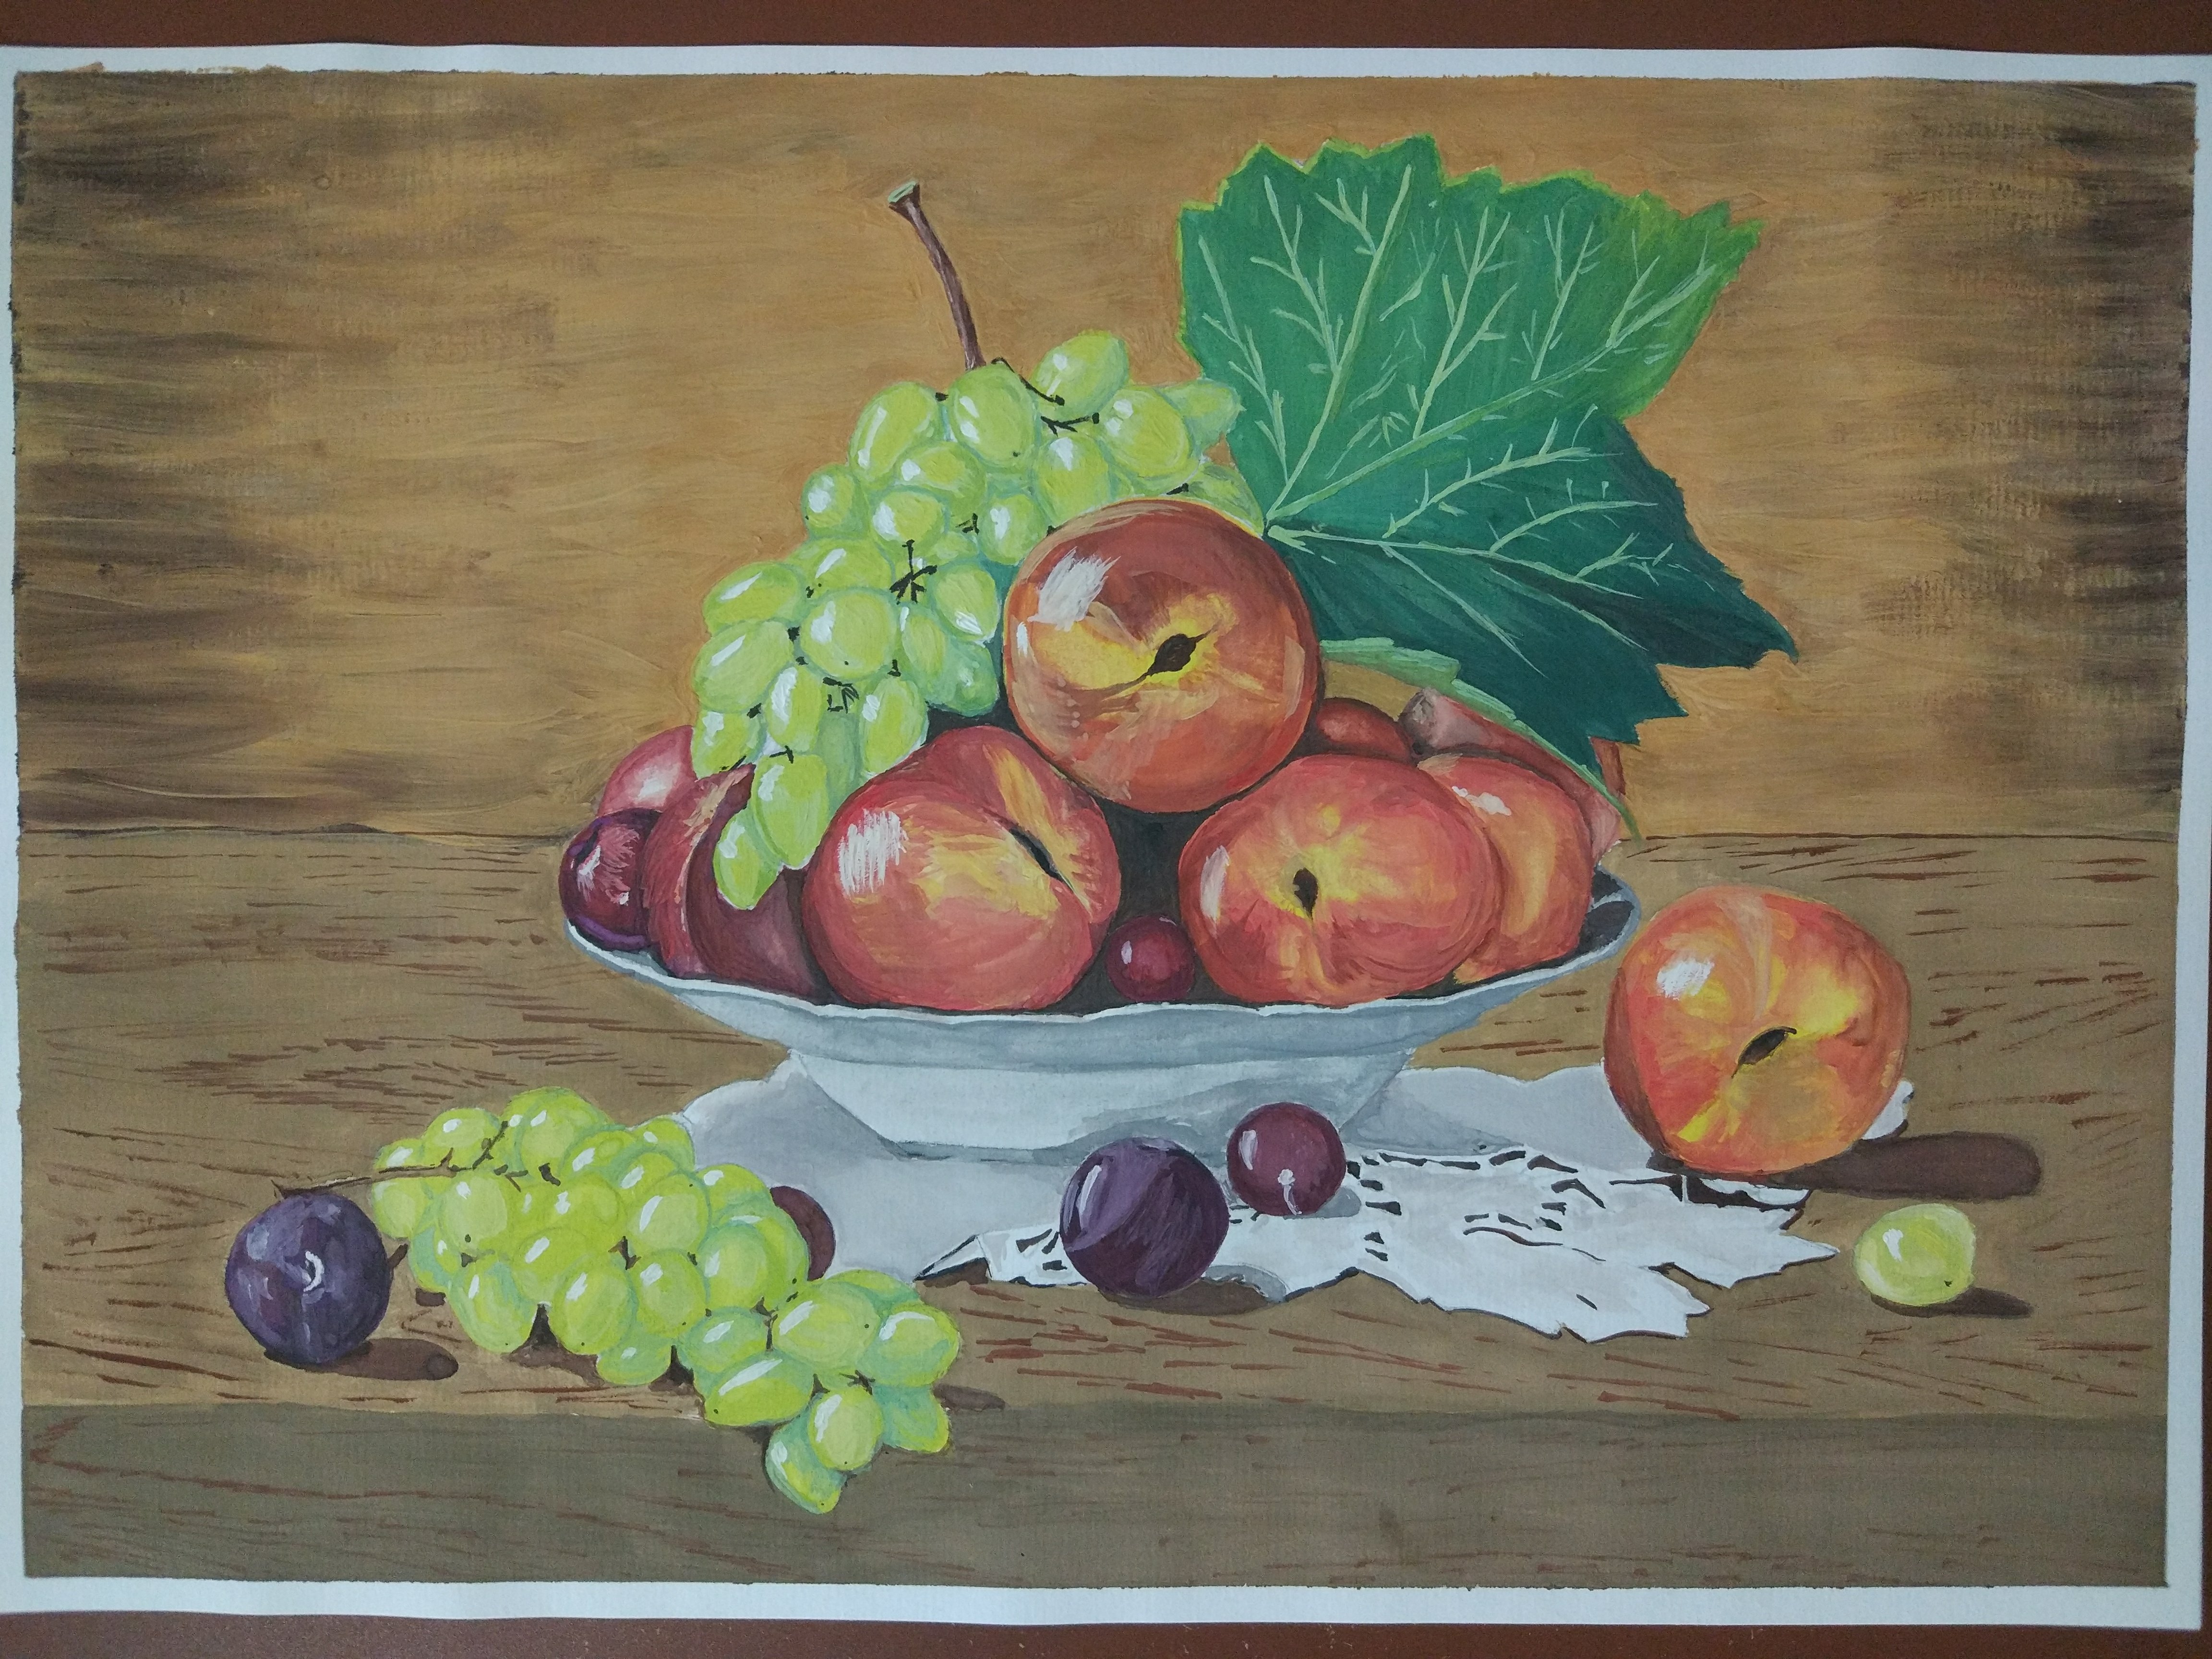 Детский рисунок натюрморт с фруктами